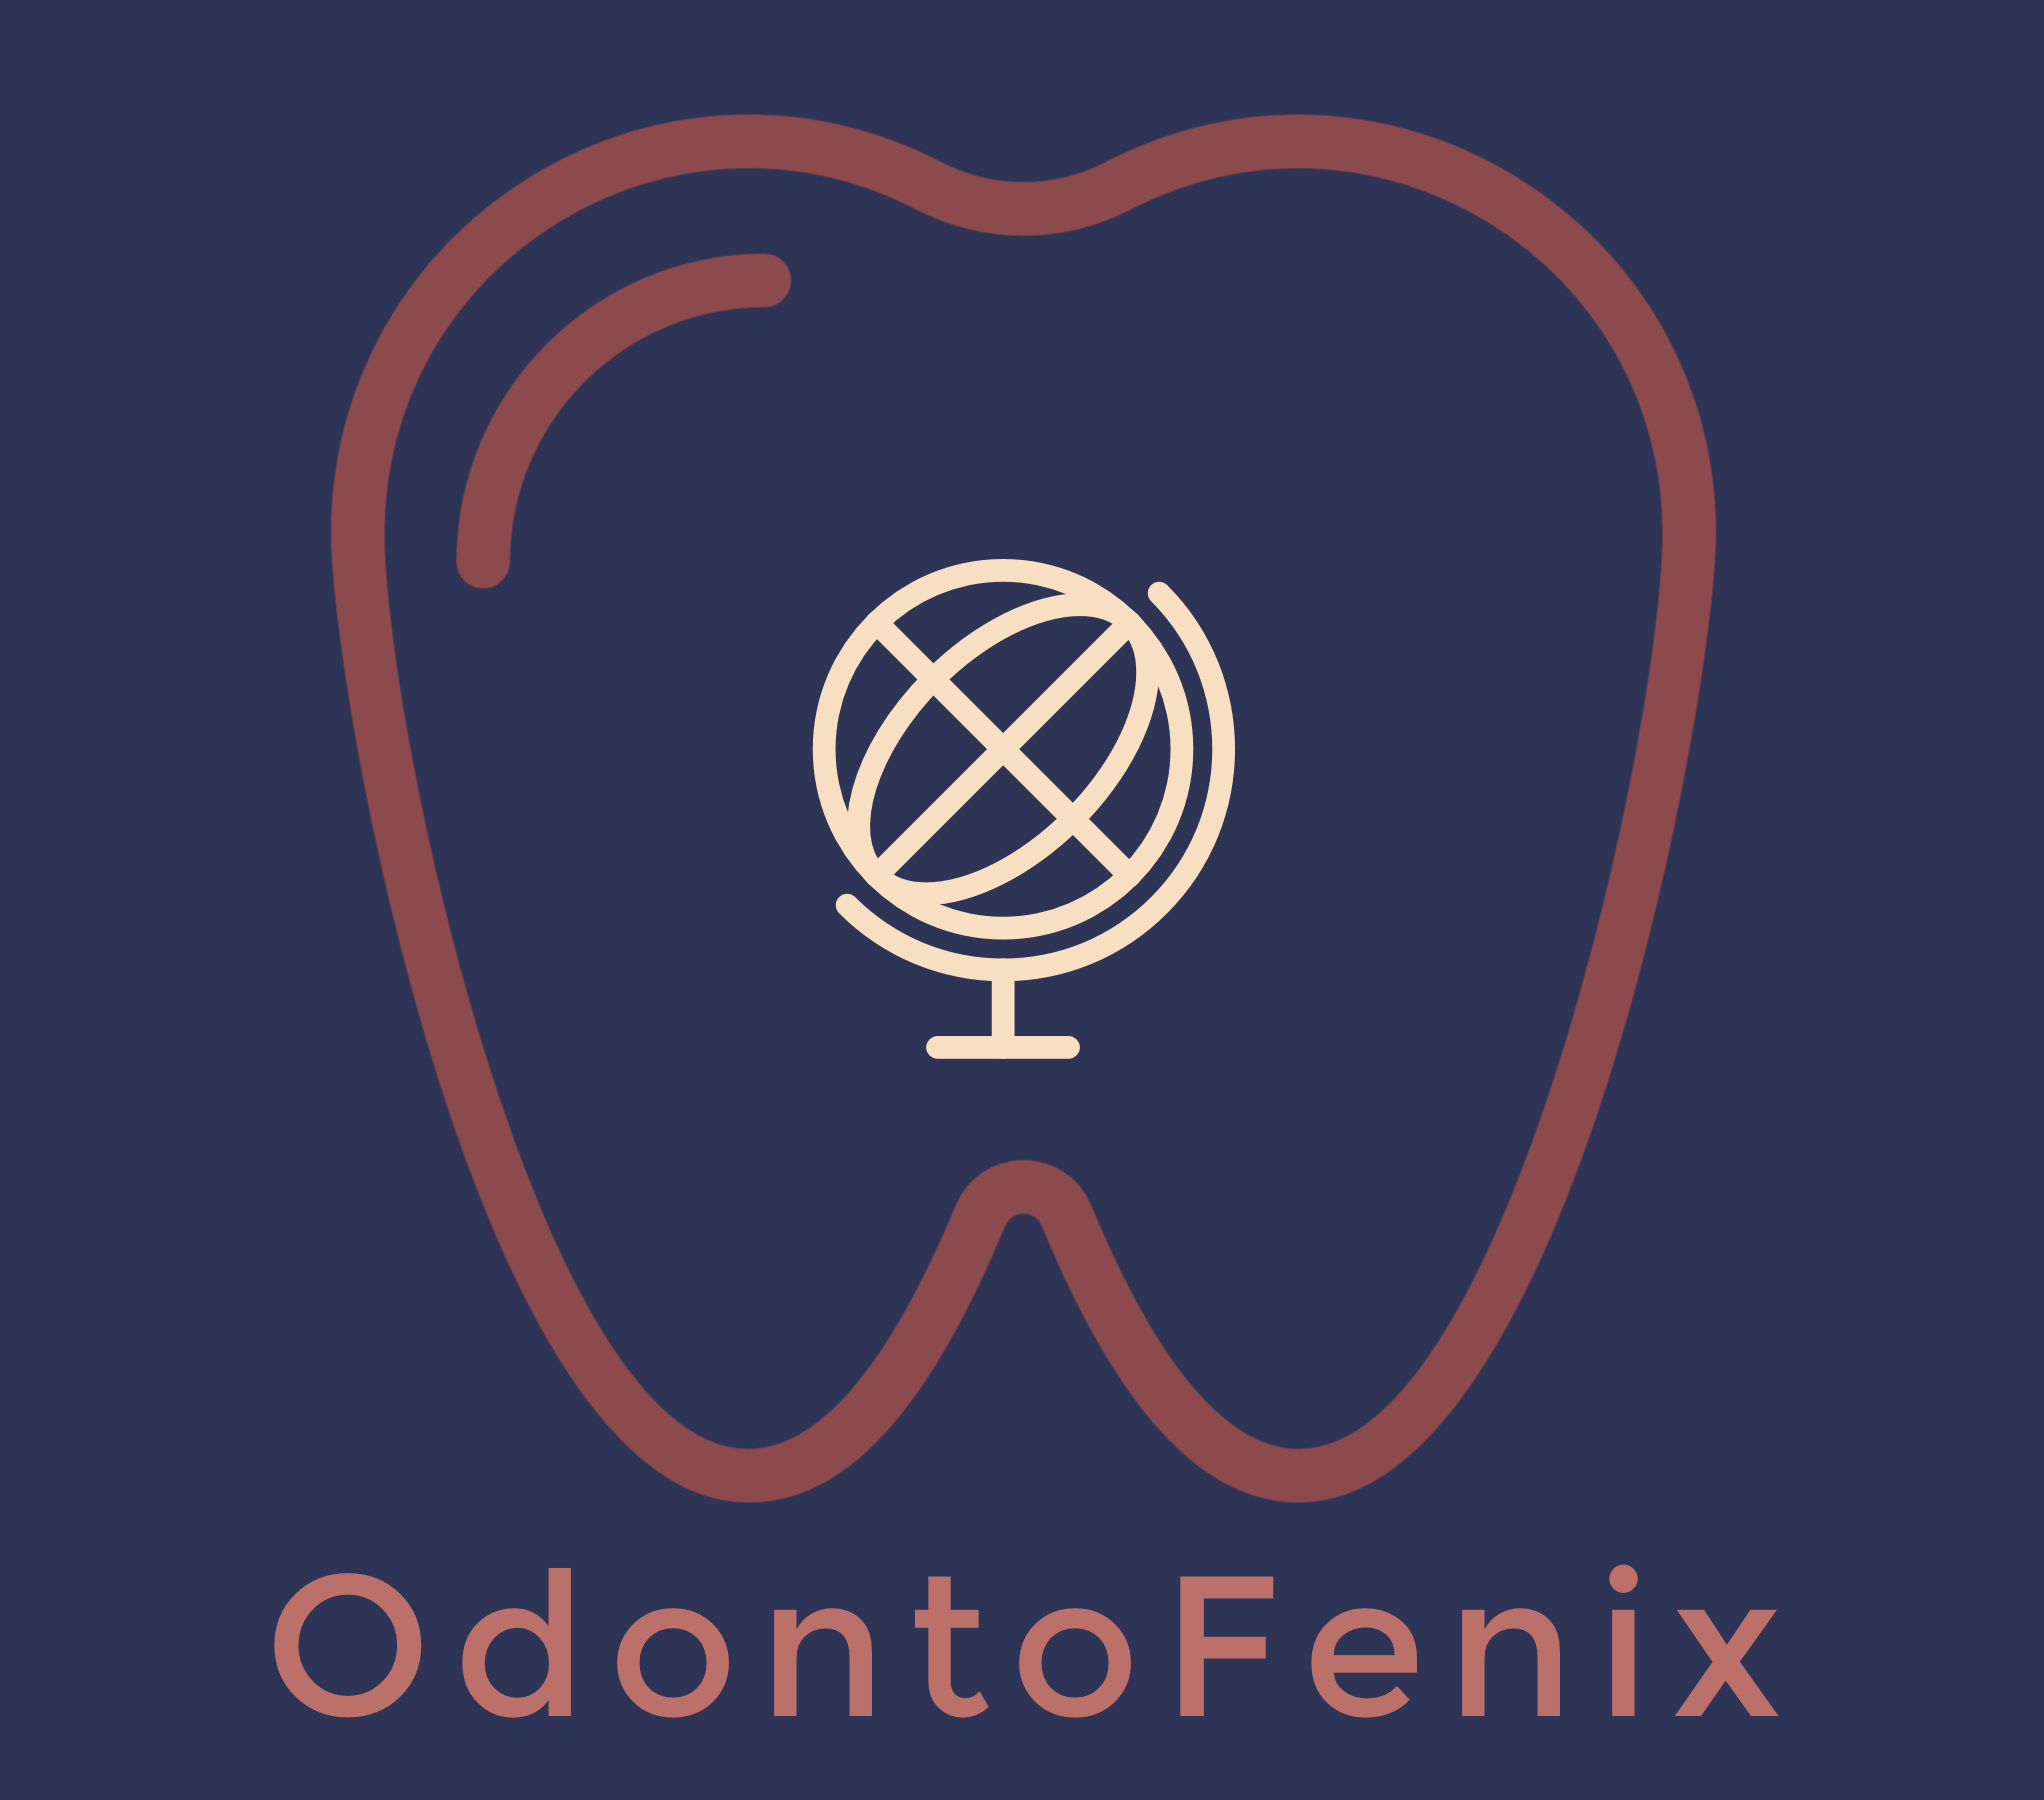 OdontoFenix